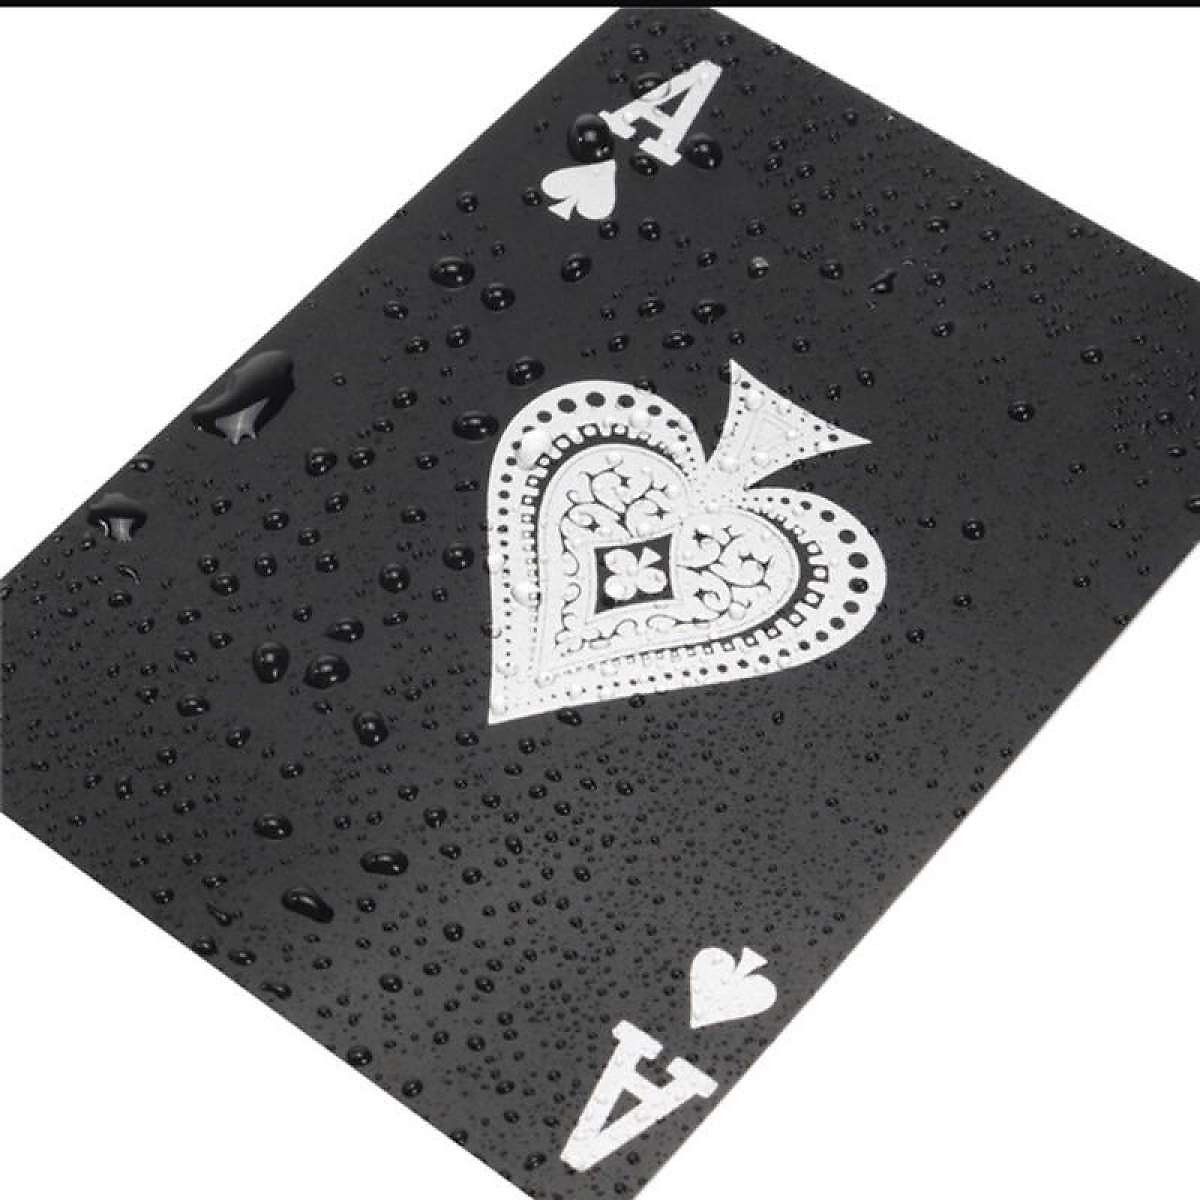 Bộ bài tây nền đen cao cấp - Bài tây nhựa PVC chống nước, đàn hồi tốt - Bộ bài Poker cao cấp nền đen chính hãng D Danido